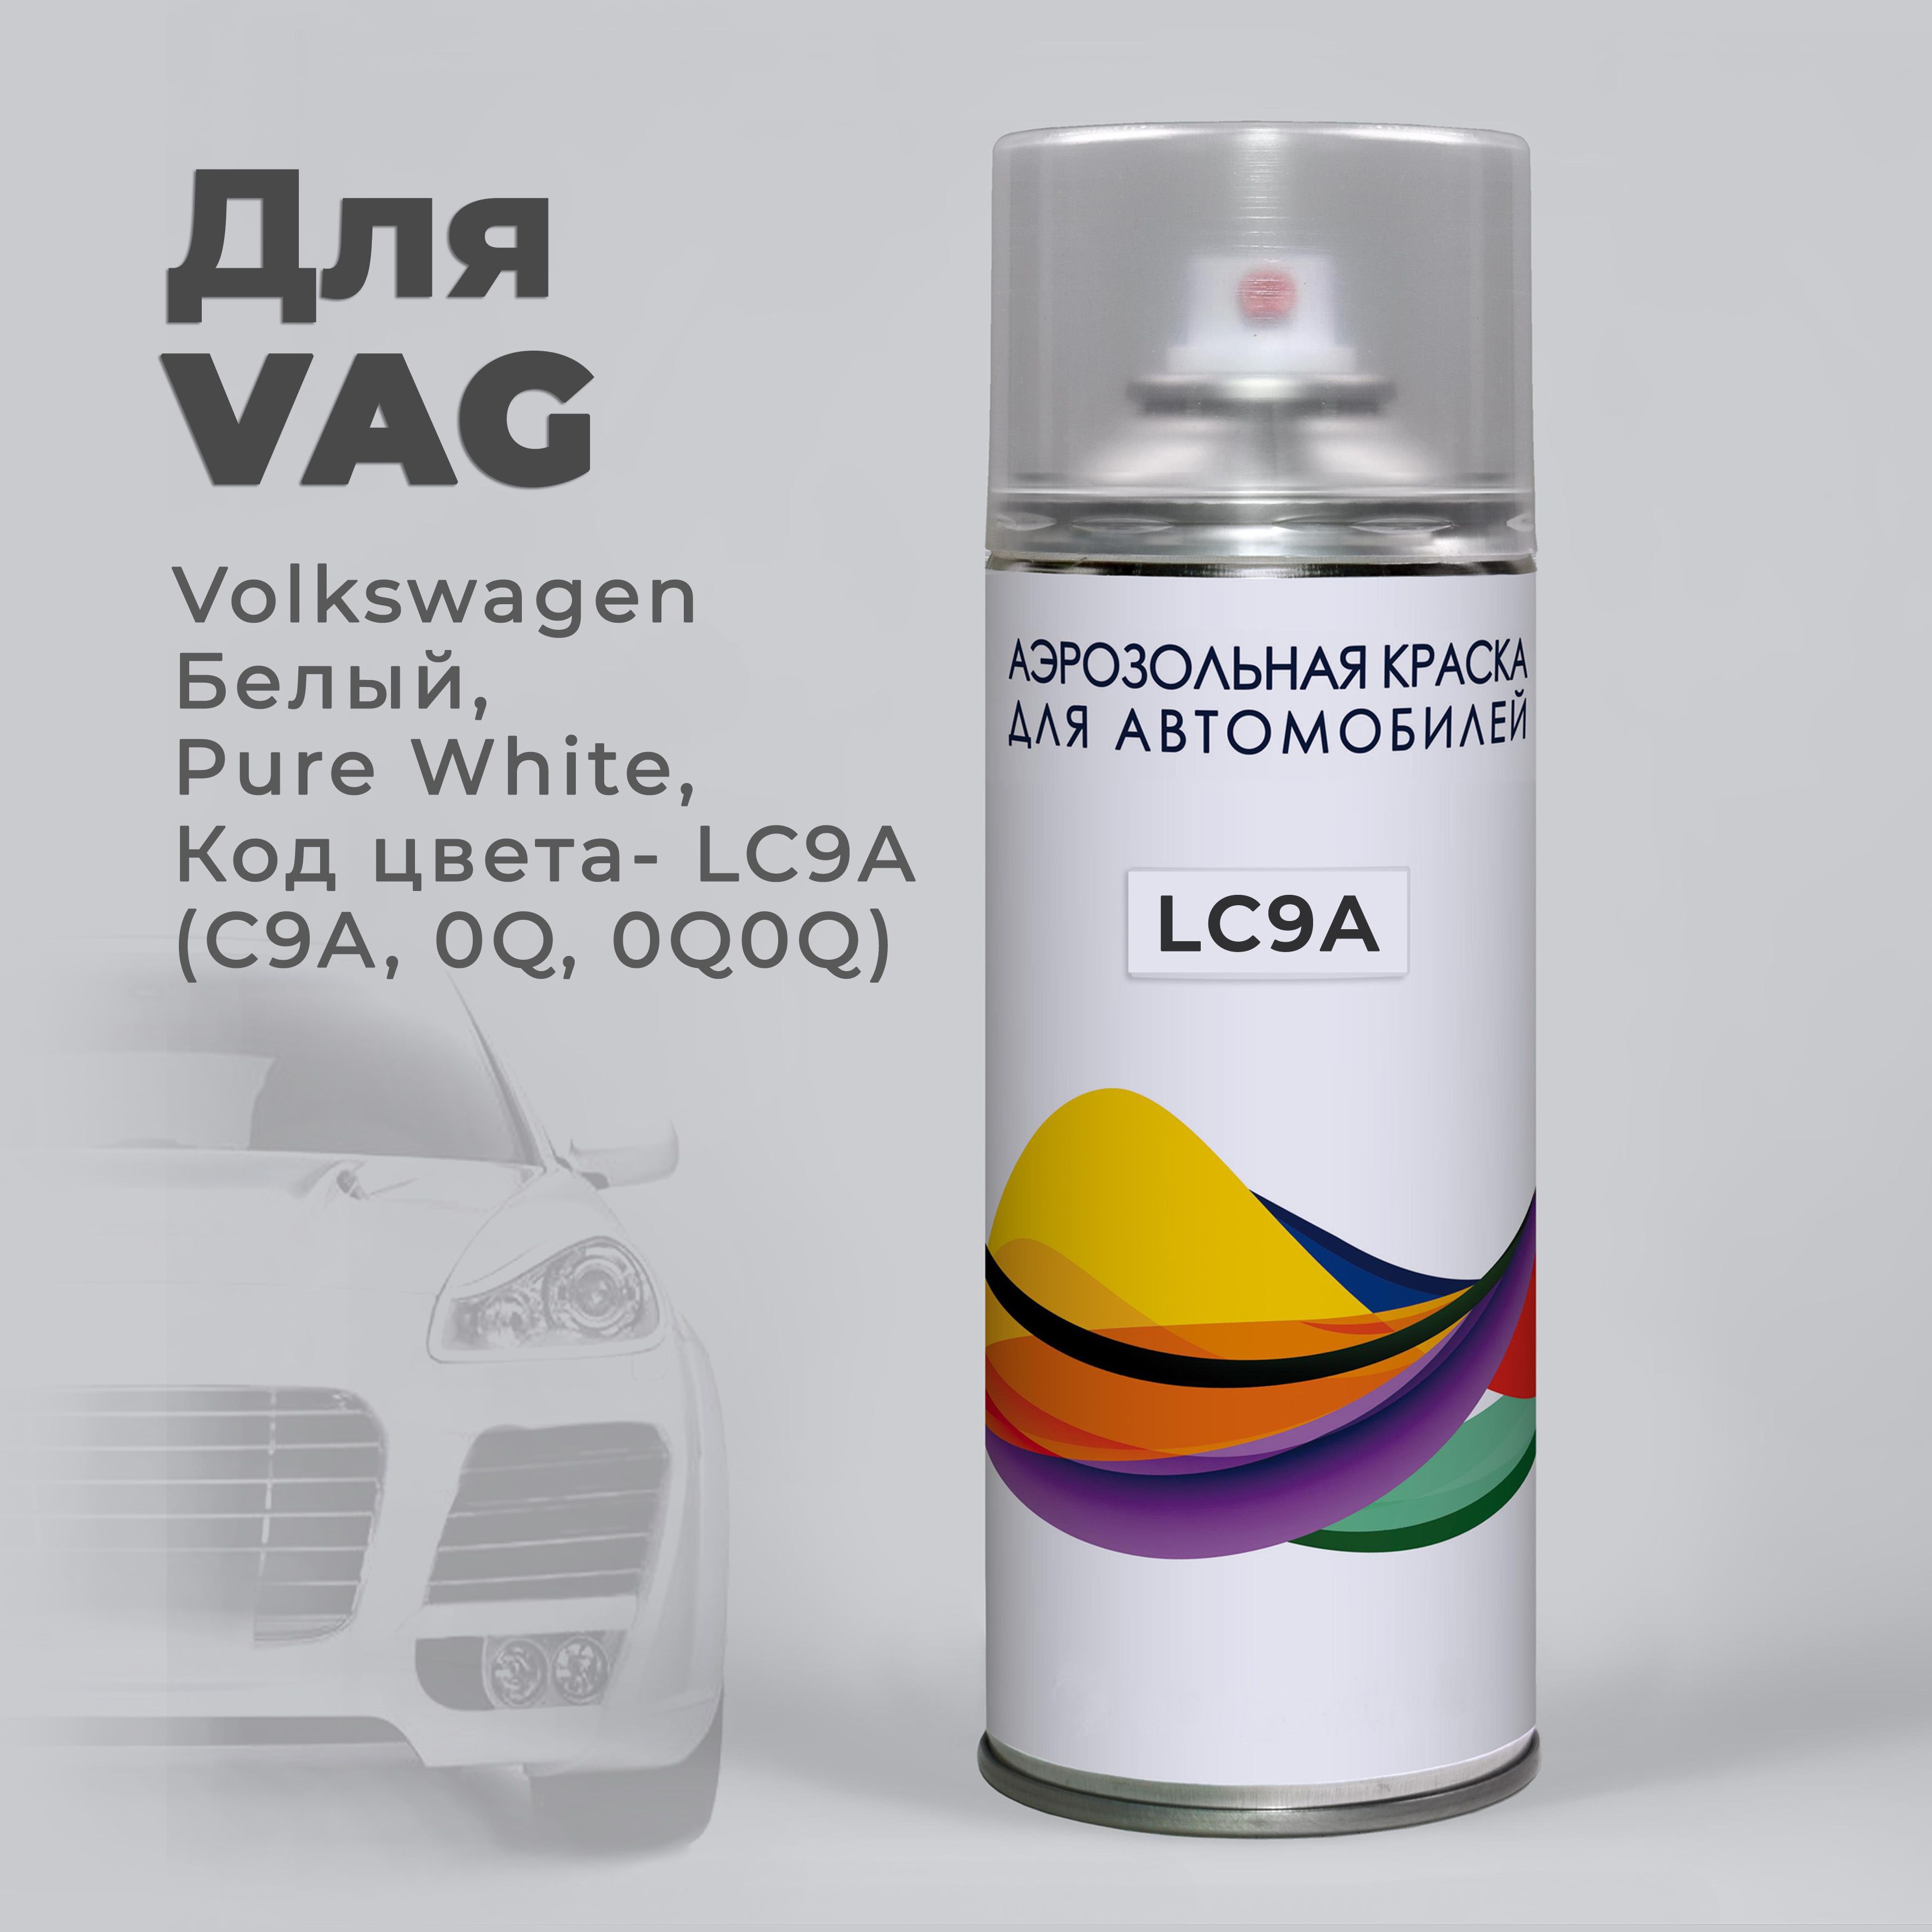 Автомобильная базовая краска VWL H4/LR Made in Italy (0,8 л